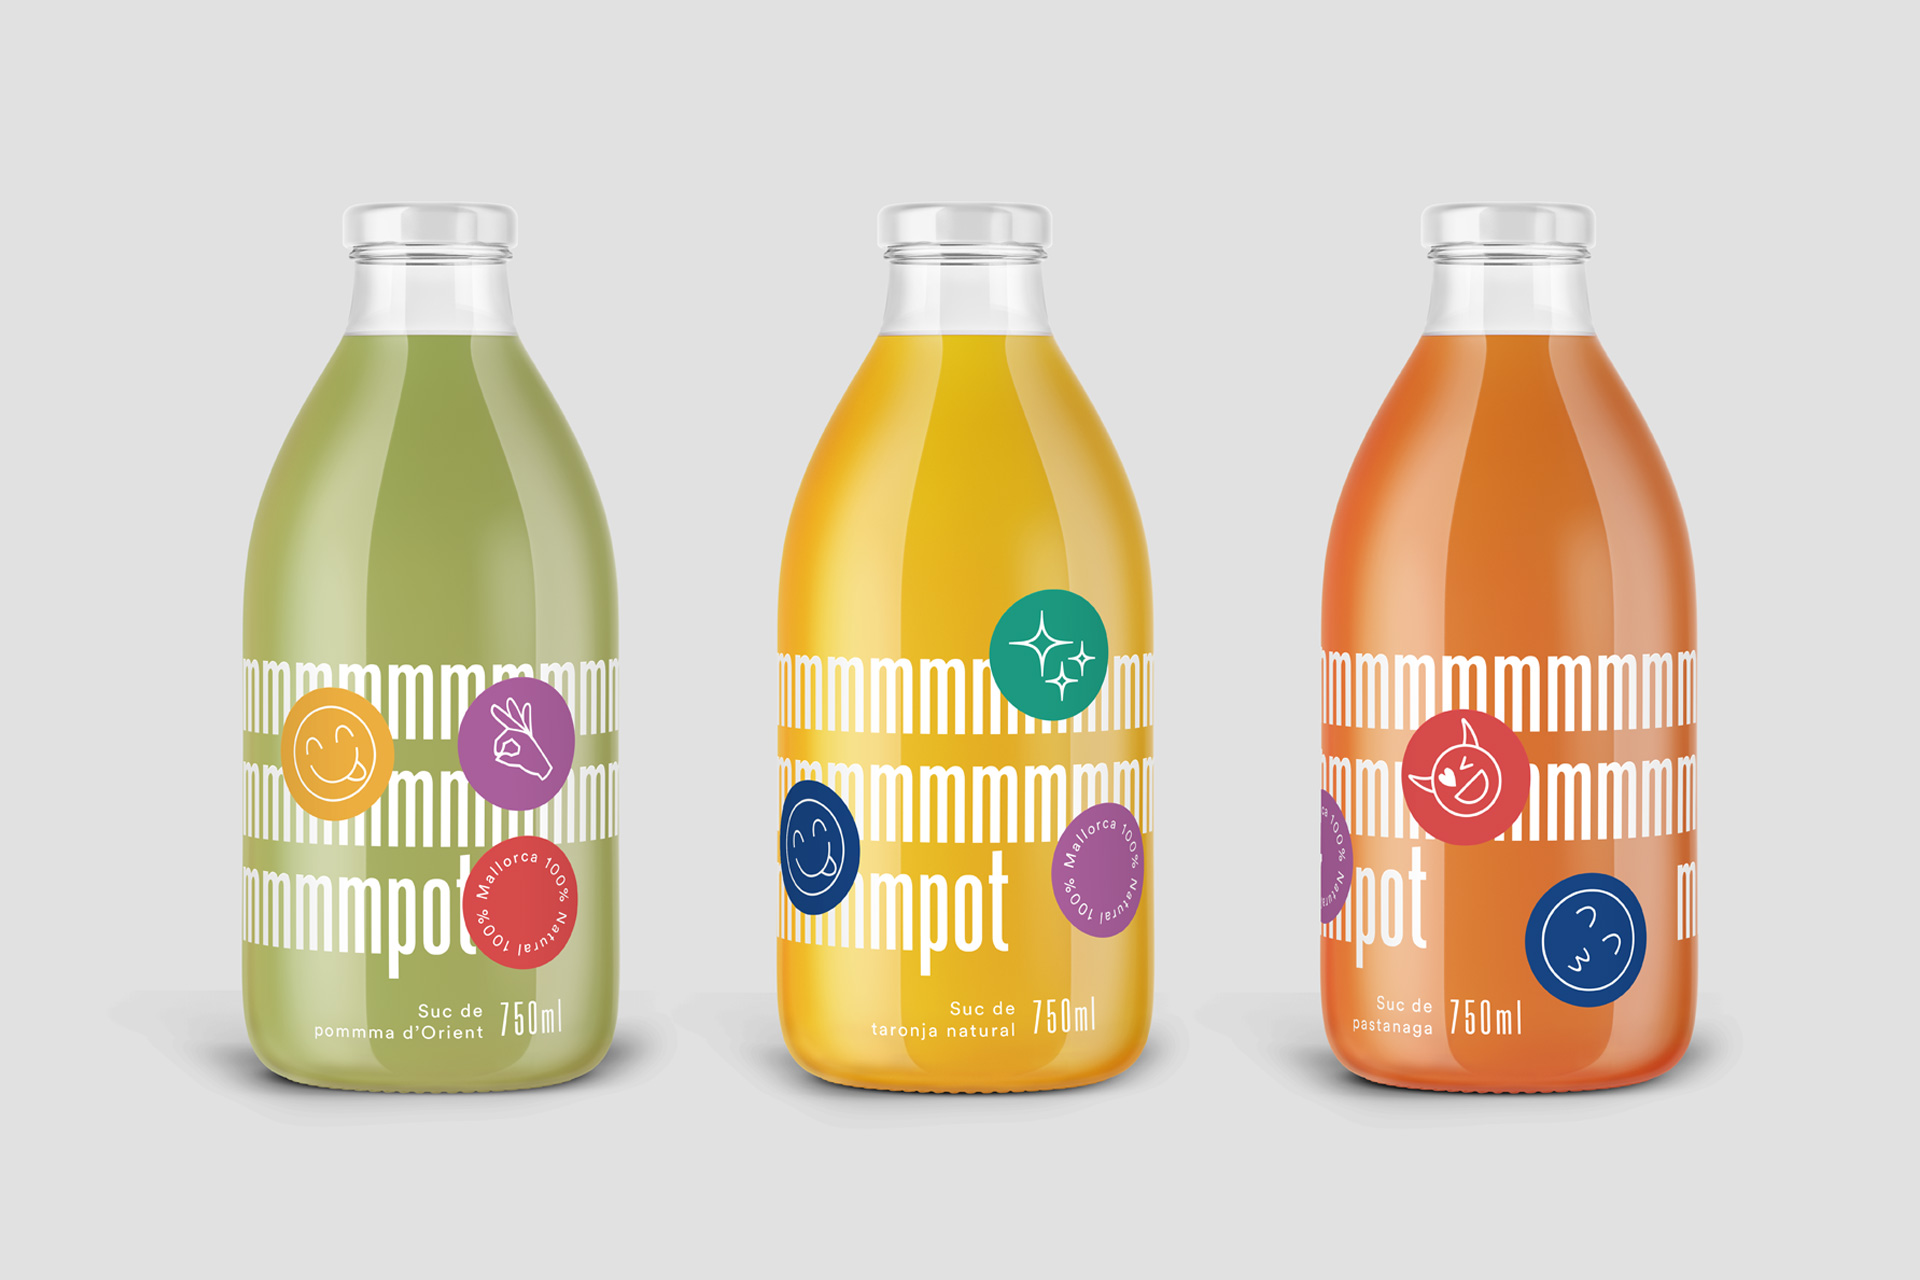 mmmpot果汁和果酱包装设计